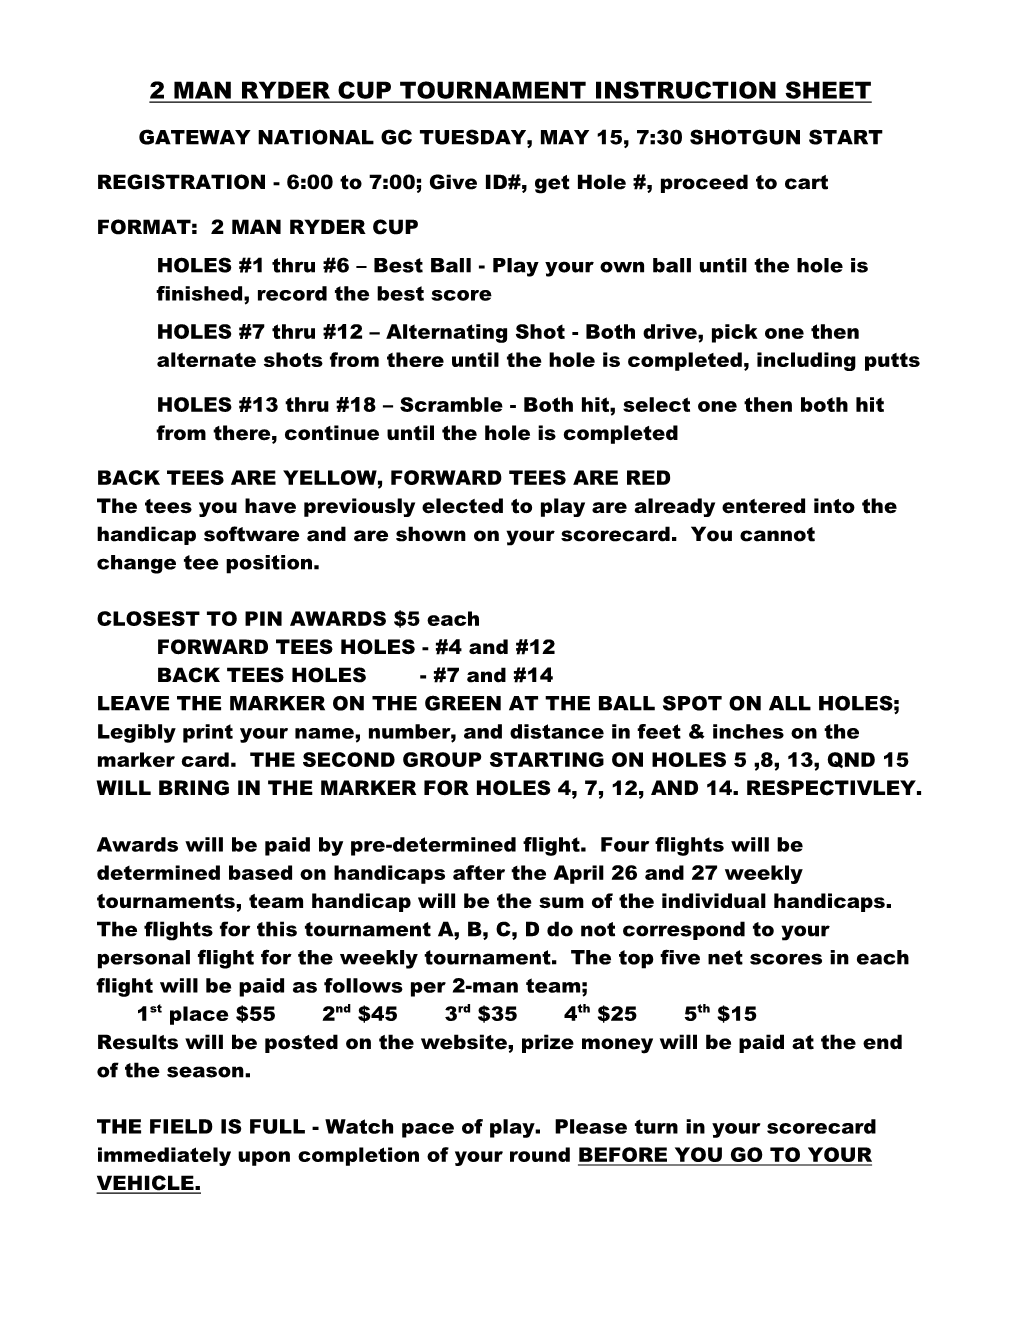 2 Man Ryder Cup Tournament Instruction Sheet